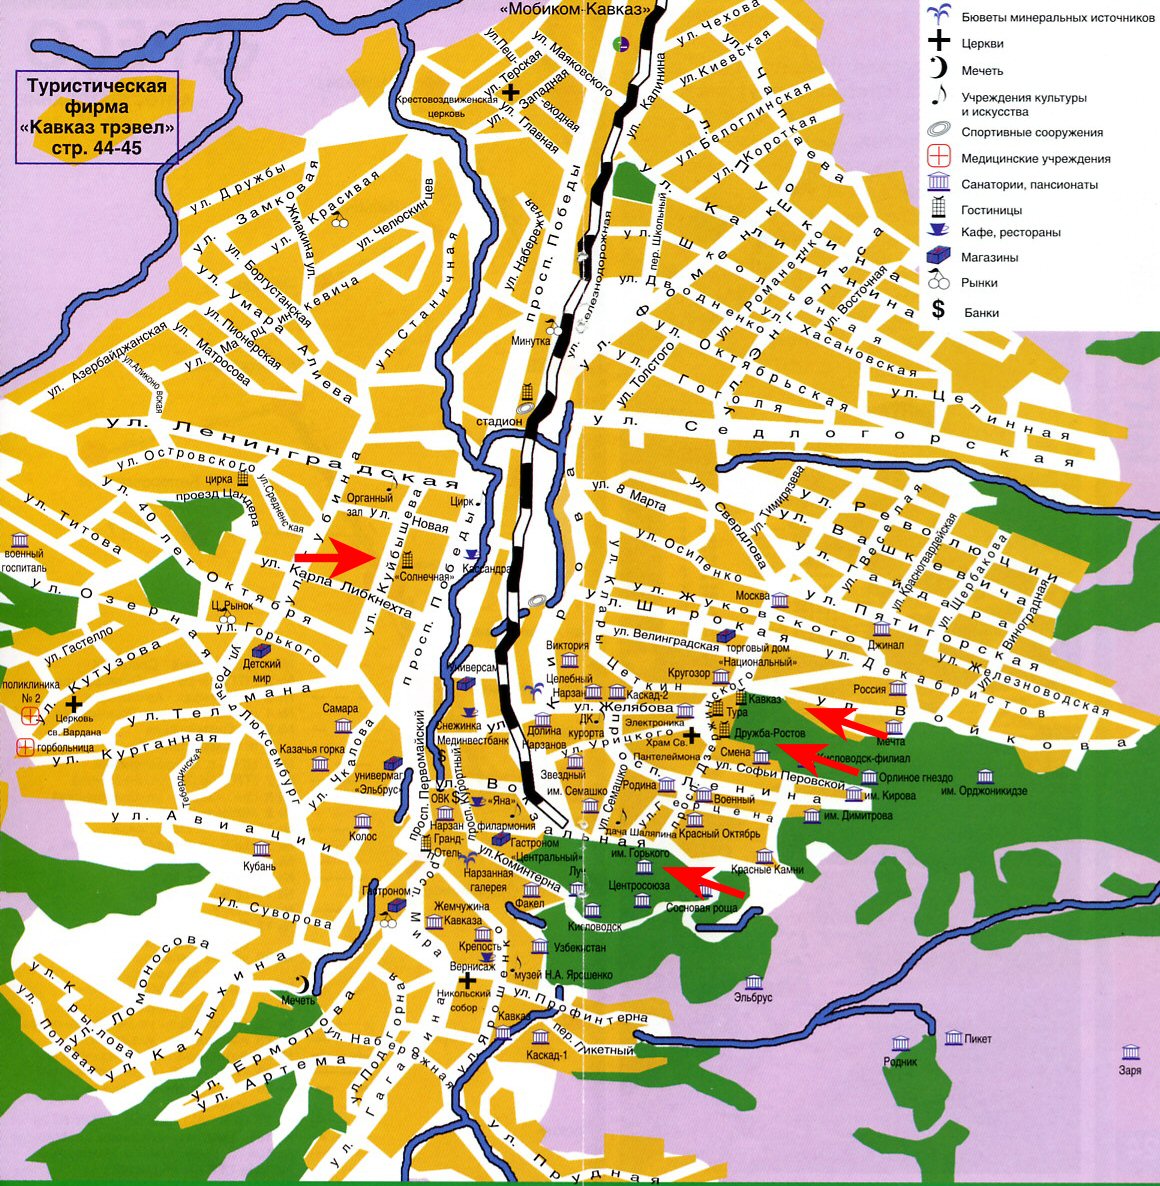 Карта центральной части города Кисловодска